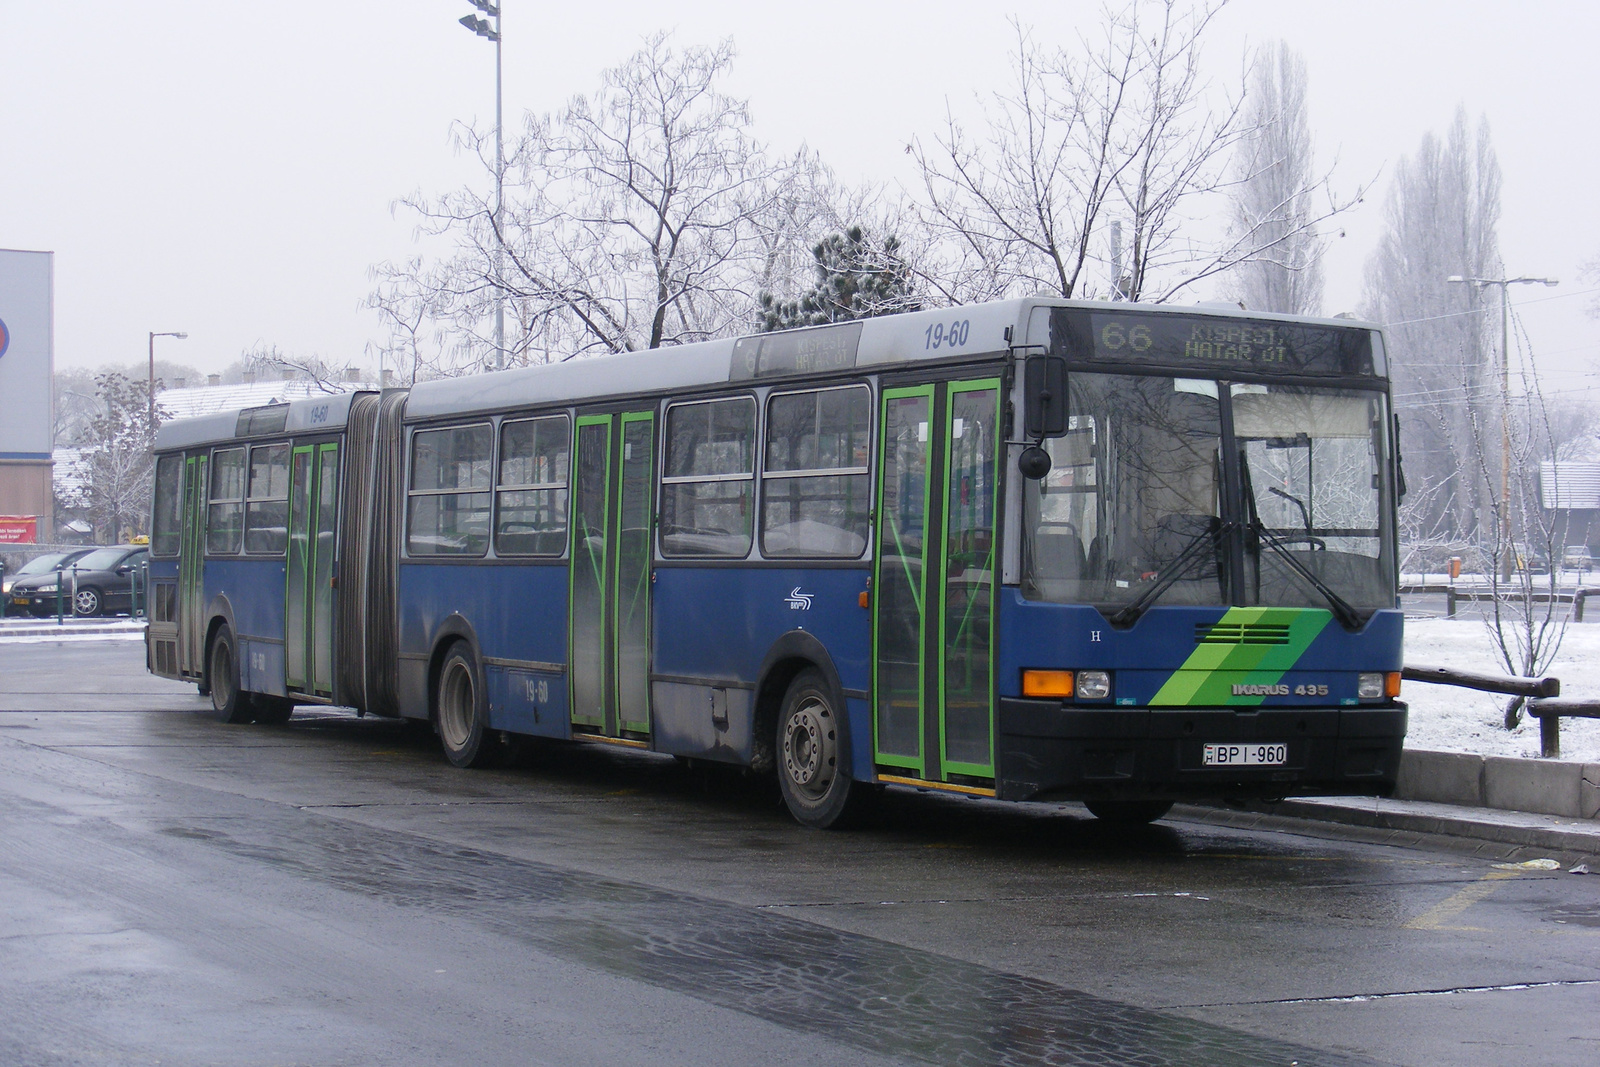 Busz BPI-960